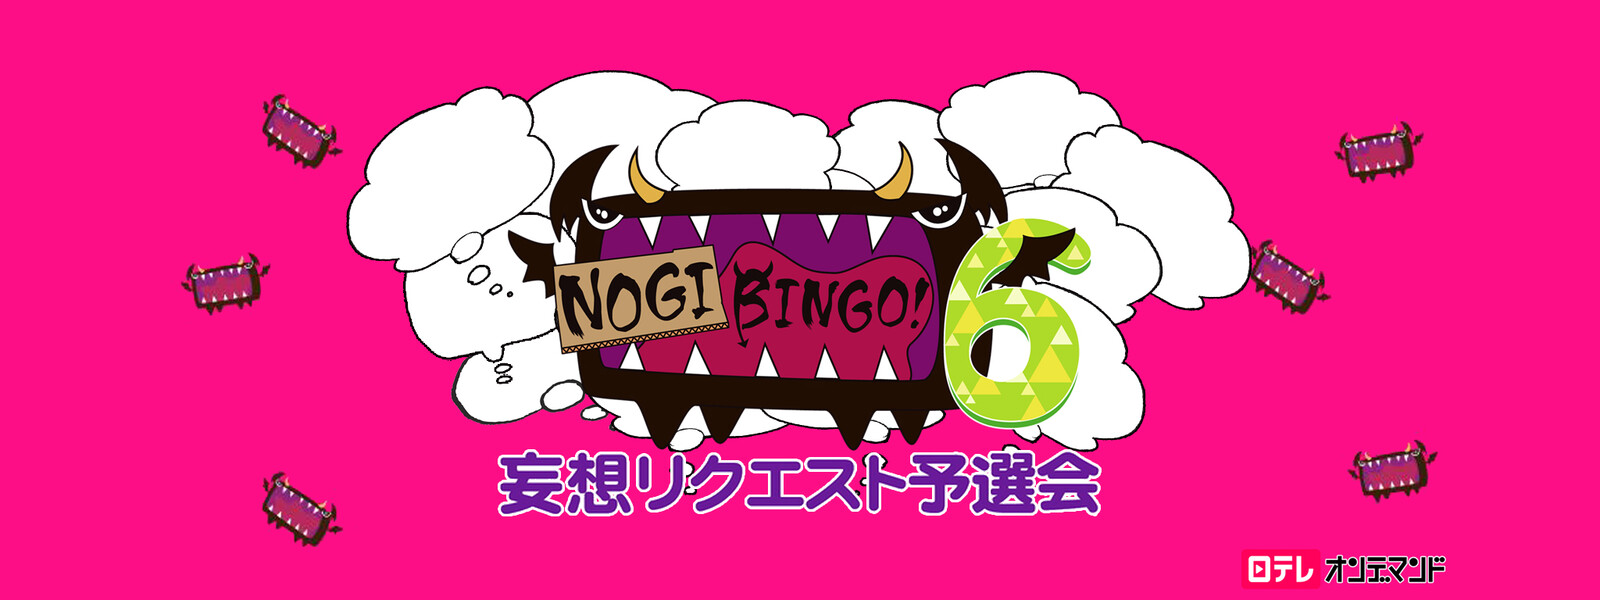 NOGIBINGO! 6 妄想リクエスト予選会の動画 - NOGIBINGO! 6